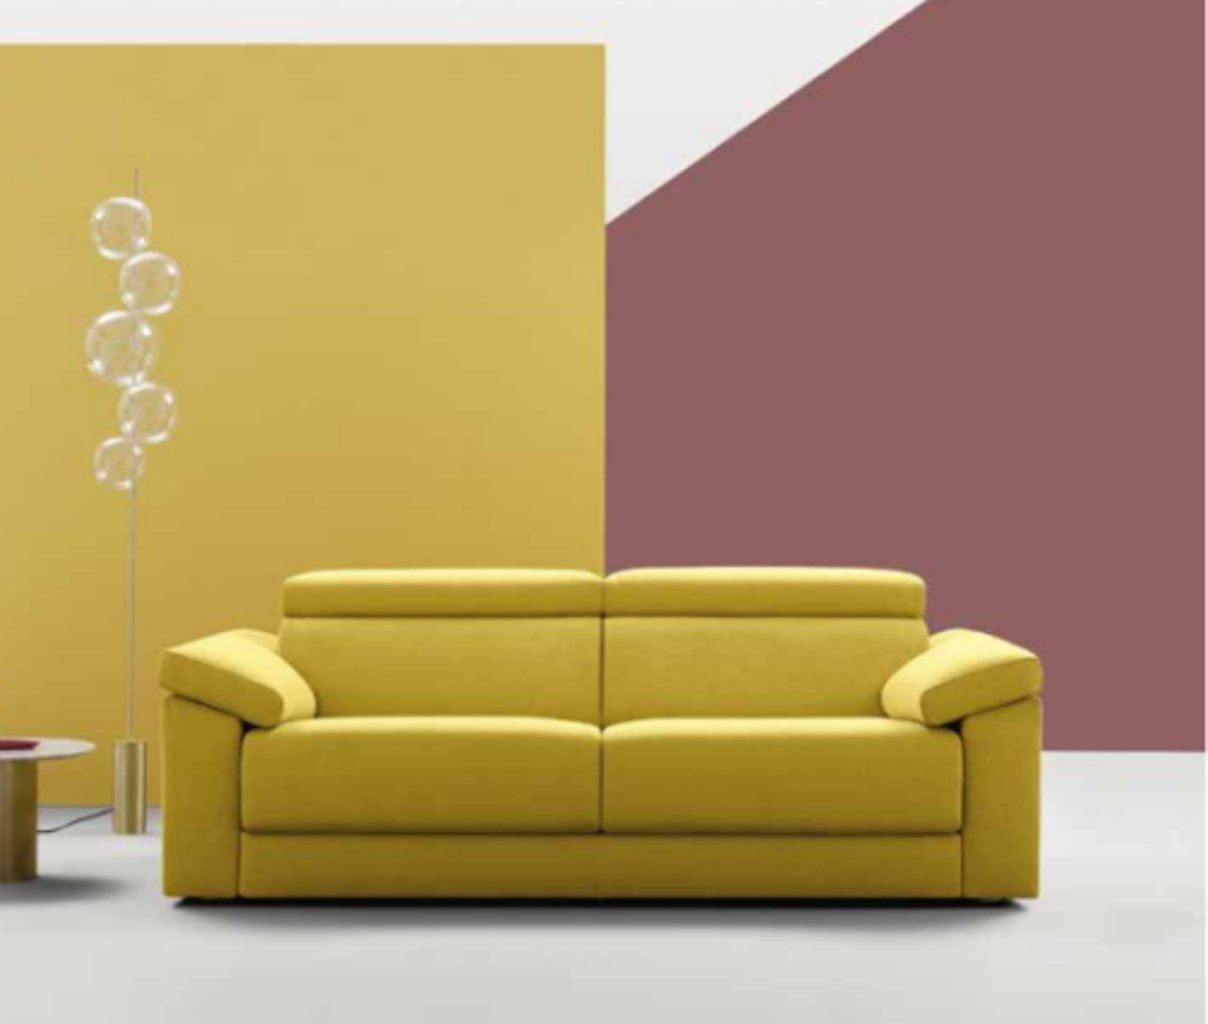 JVmoebel 3-Sitzer Big Sofas Couchen Textil 3 Sitzplatz Sofa Couch Polser Sitz, Made in Europe